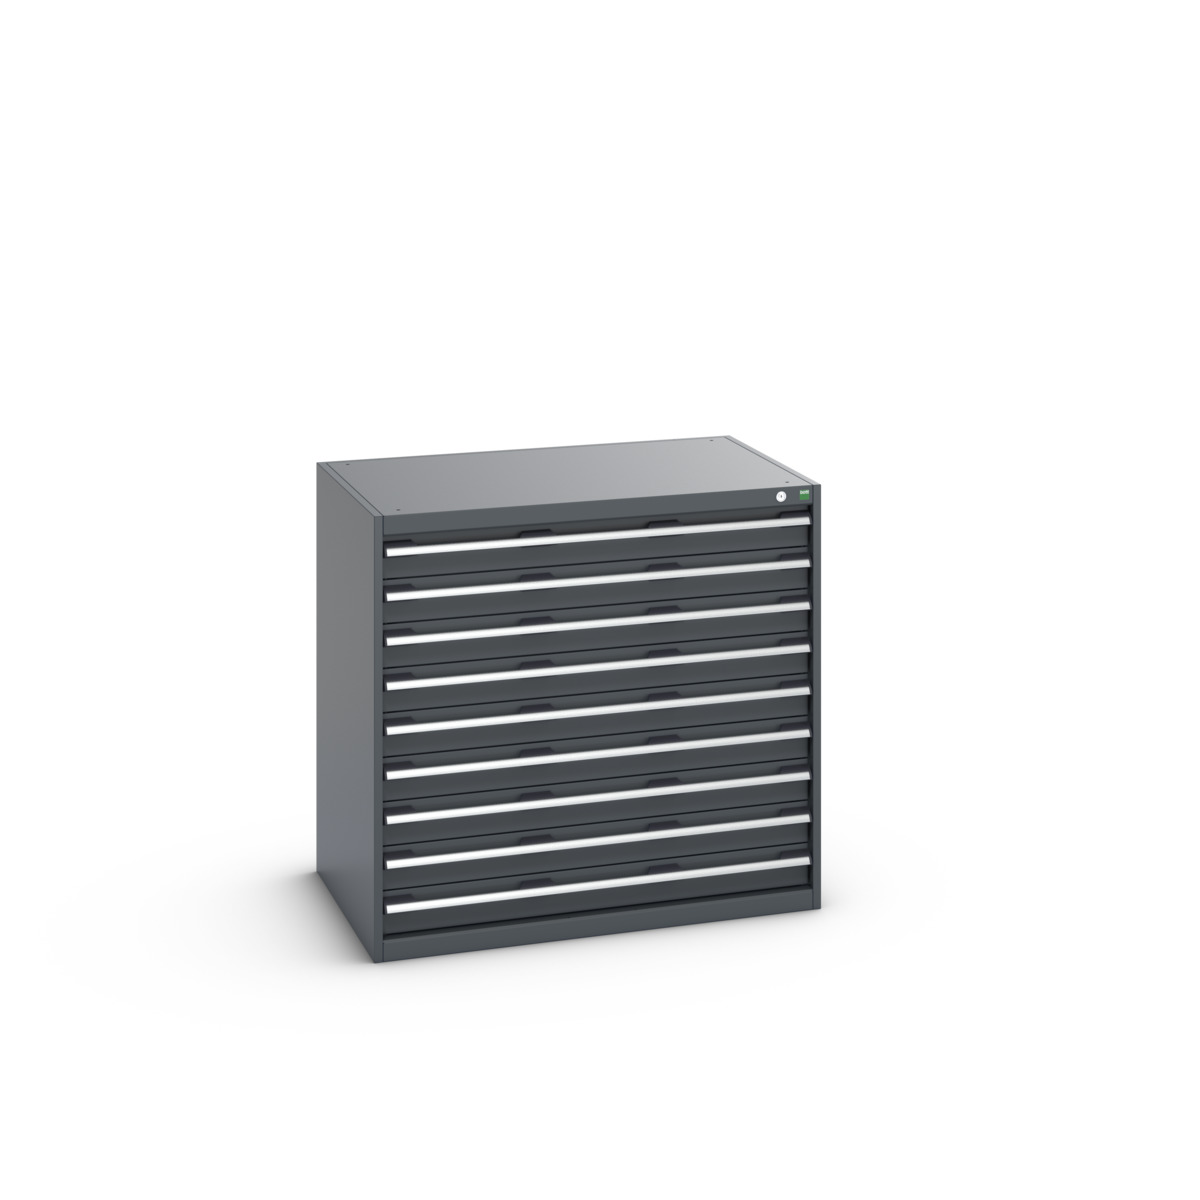 40029027.77V - cubio drawer cabinet